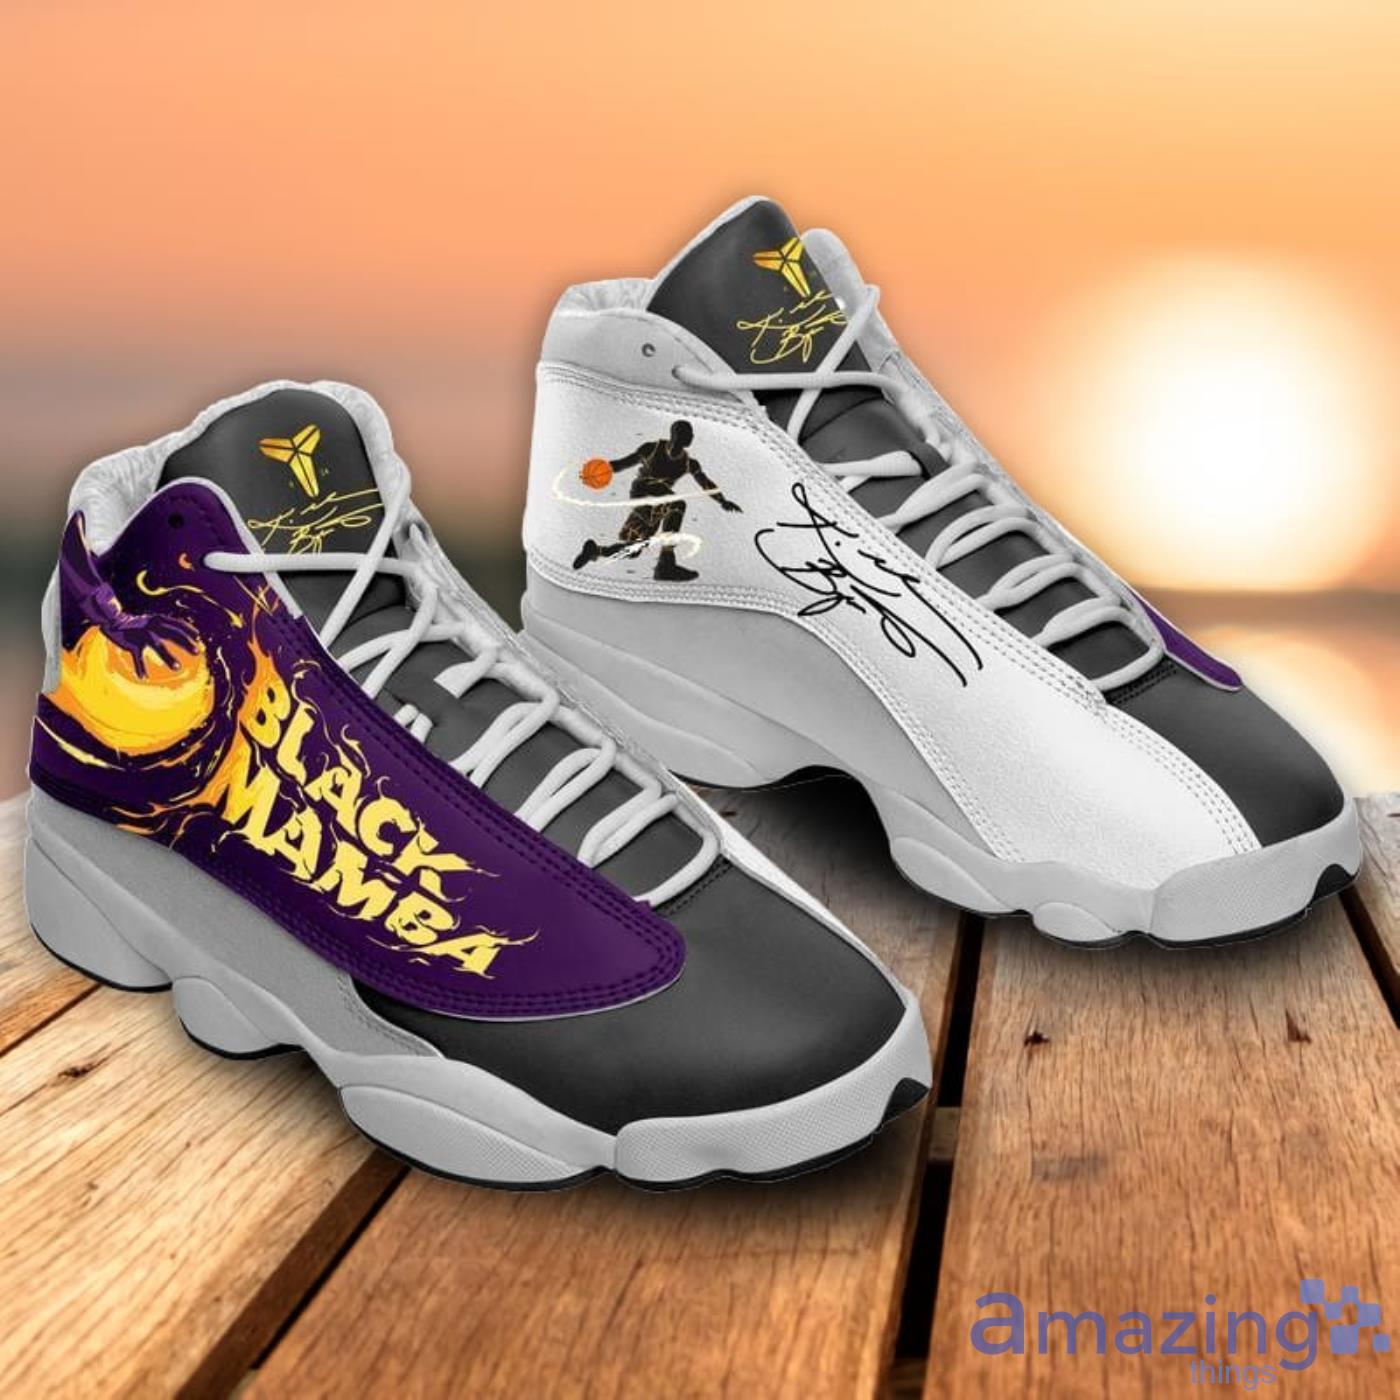 Air Jordan 13 'Lakers' Shoes - Size 8